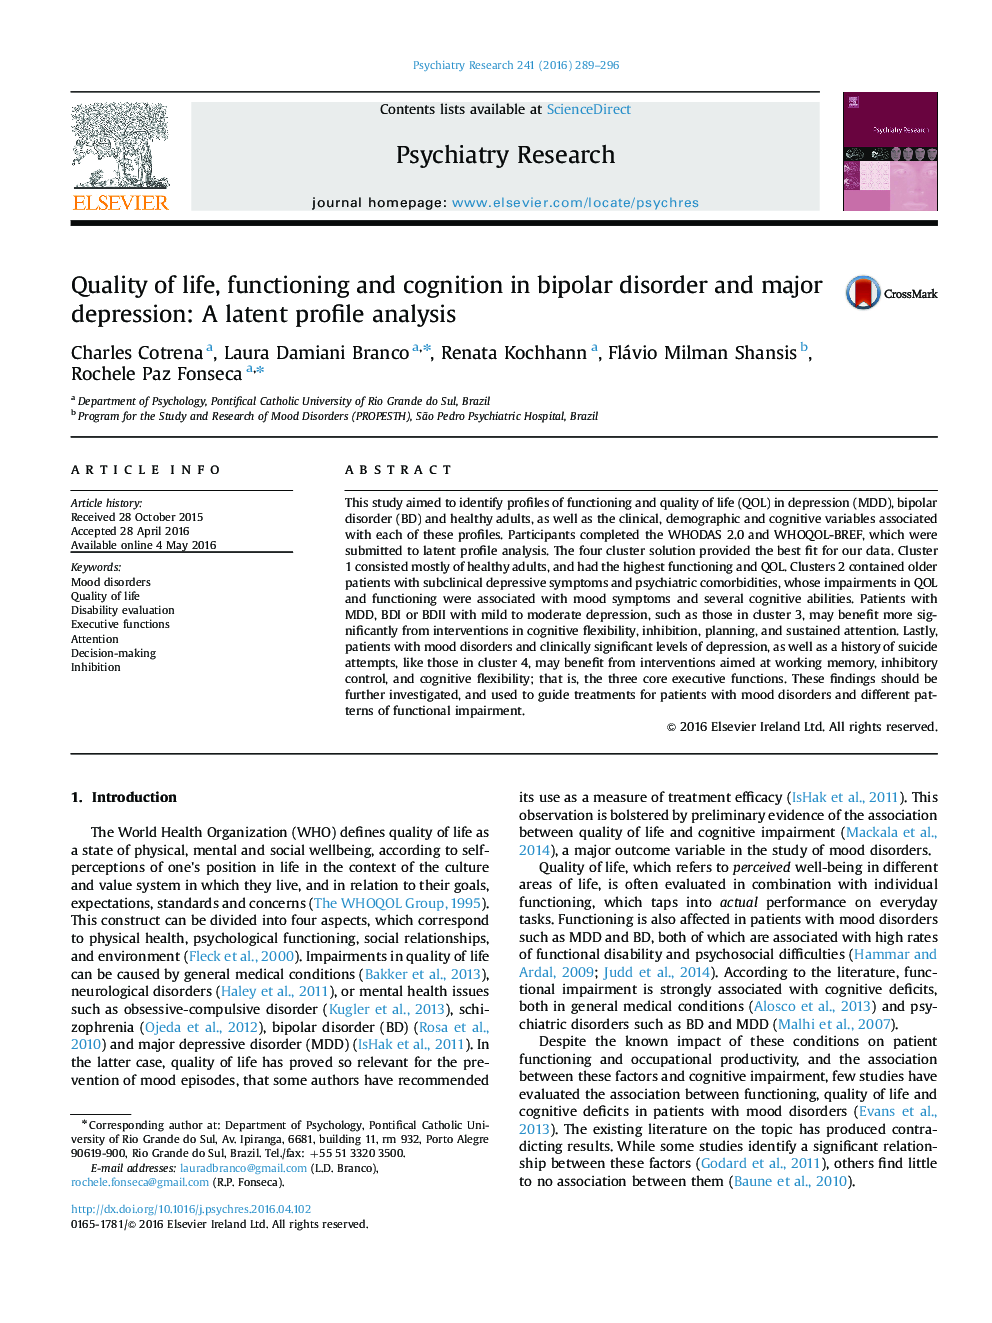 کیفیت زندگی، عملکرد و شناخت در اختلال دوقطبی و افسردگی شدید: تحلیل ویژگیهای پنهان درونی